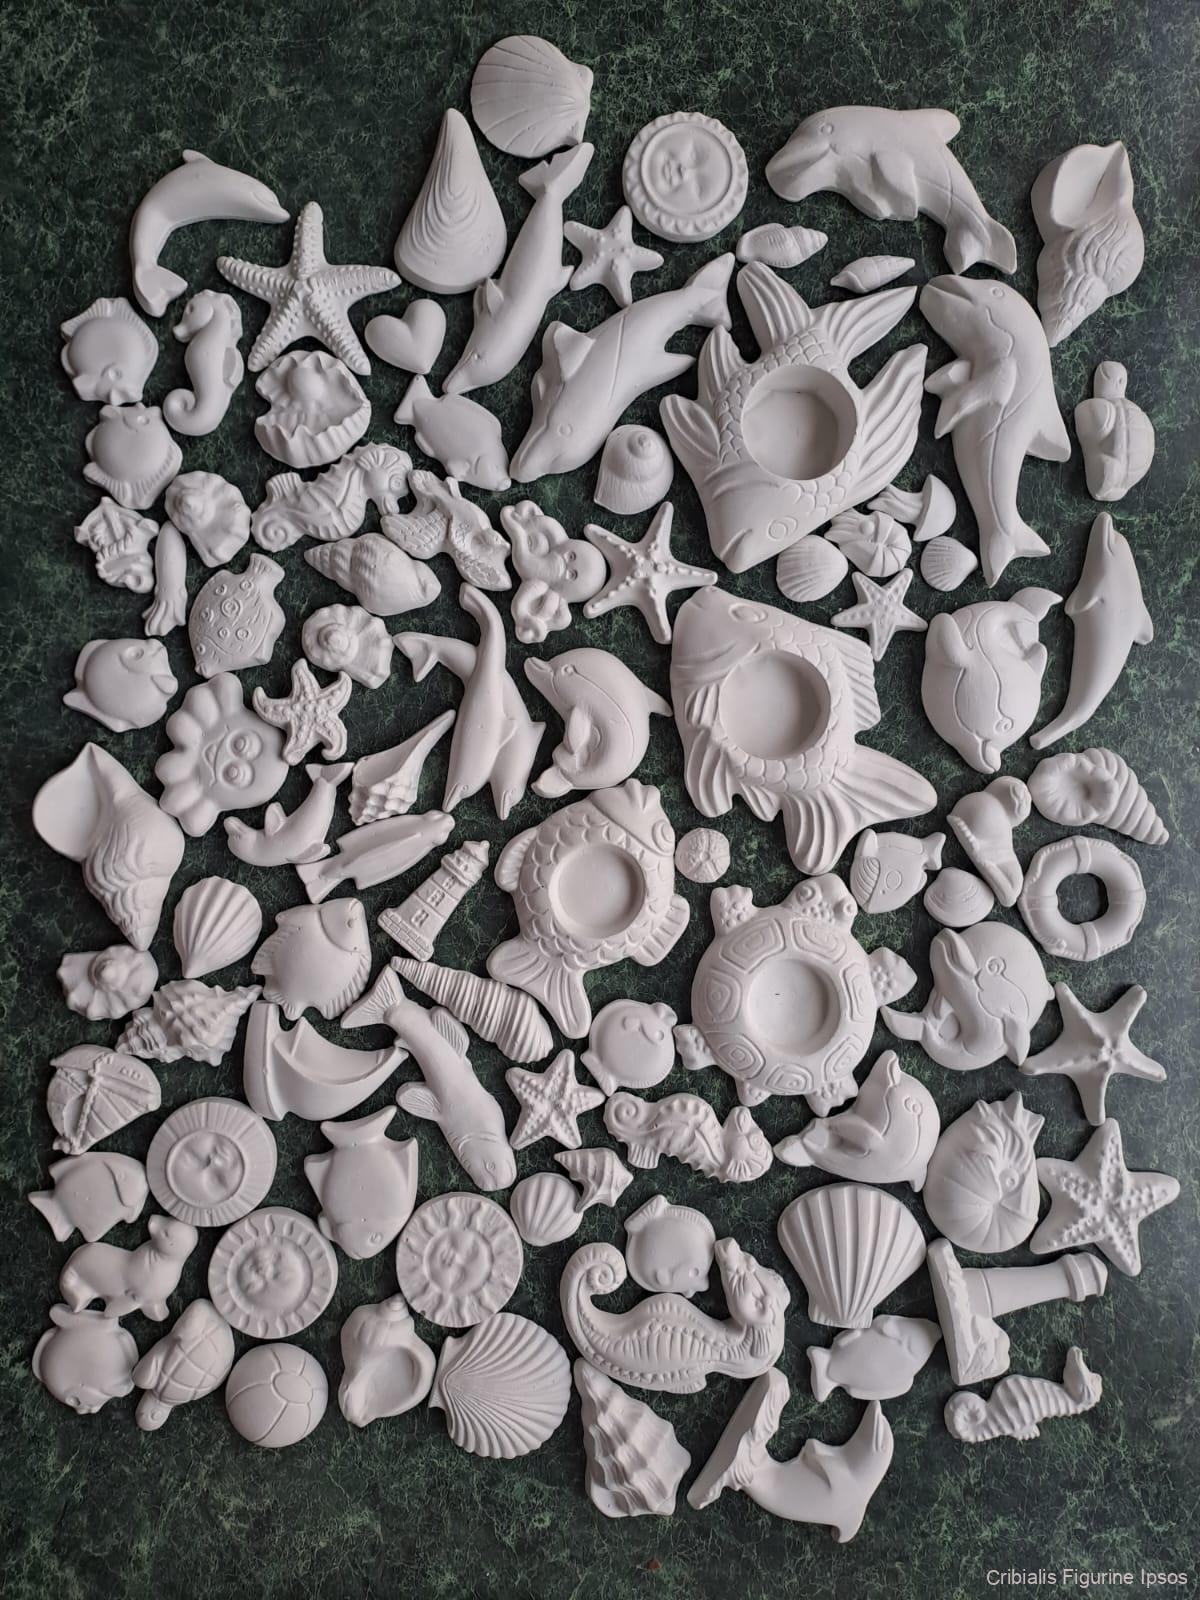 Set 100 figurine ipsos de vara cu agatatoare